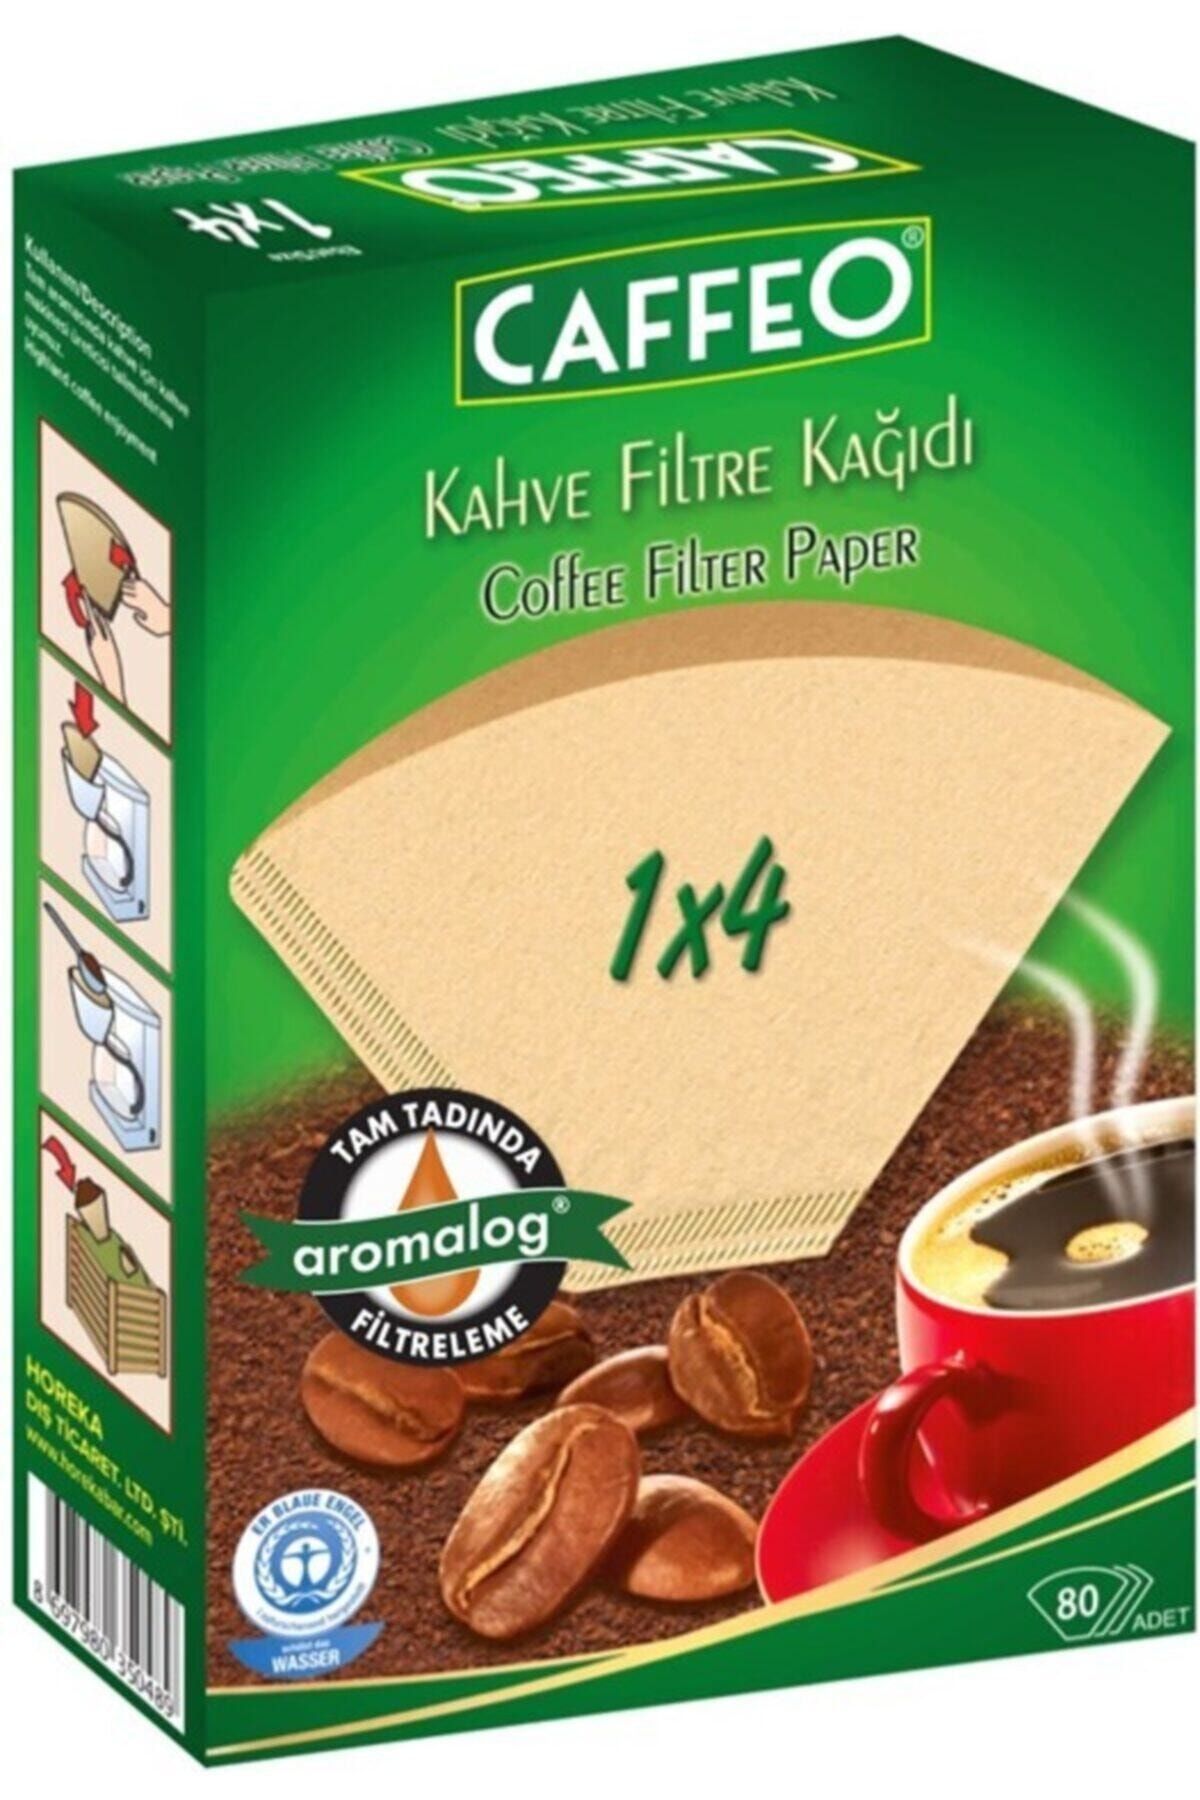 Caffeo Kahve Filtre Kağıdı 1 X 4 80'li